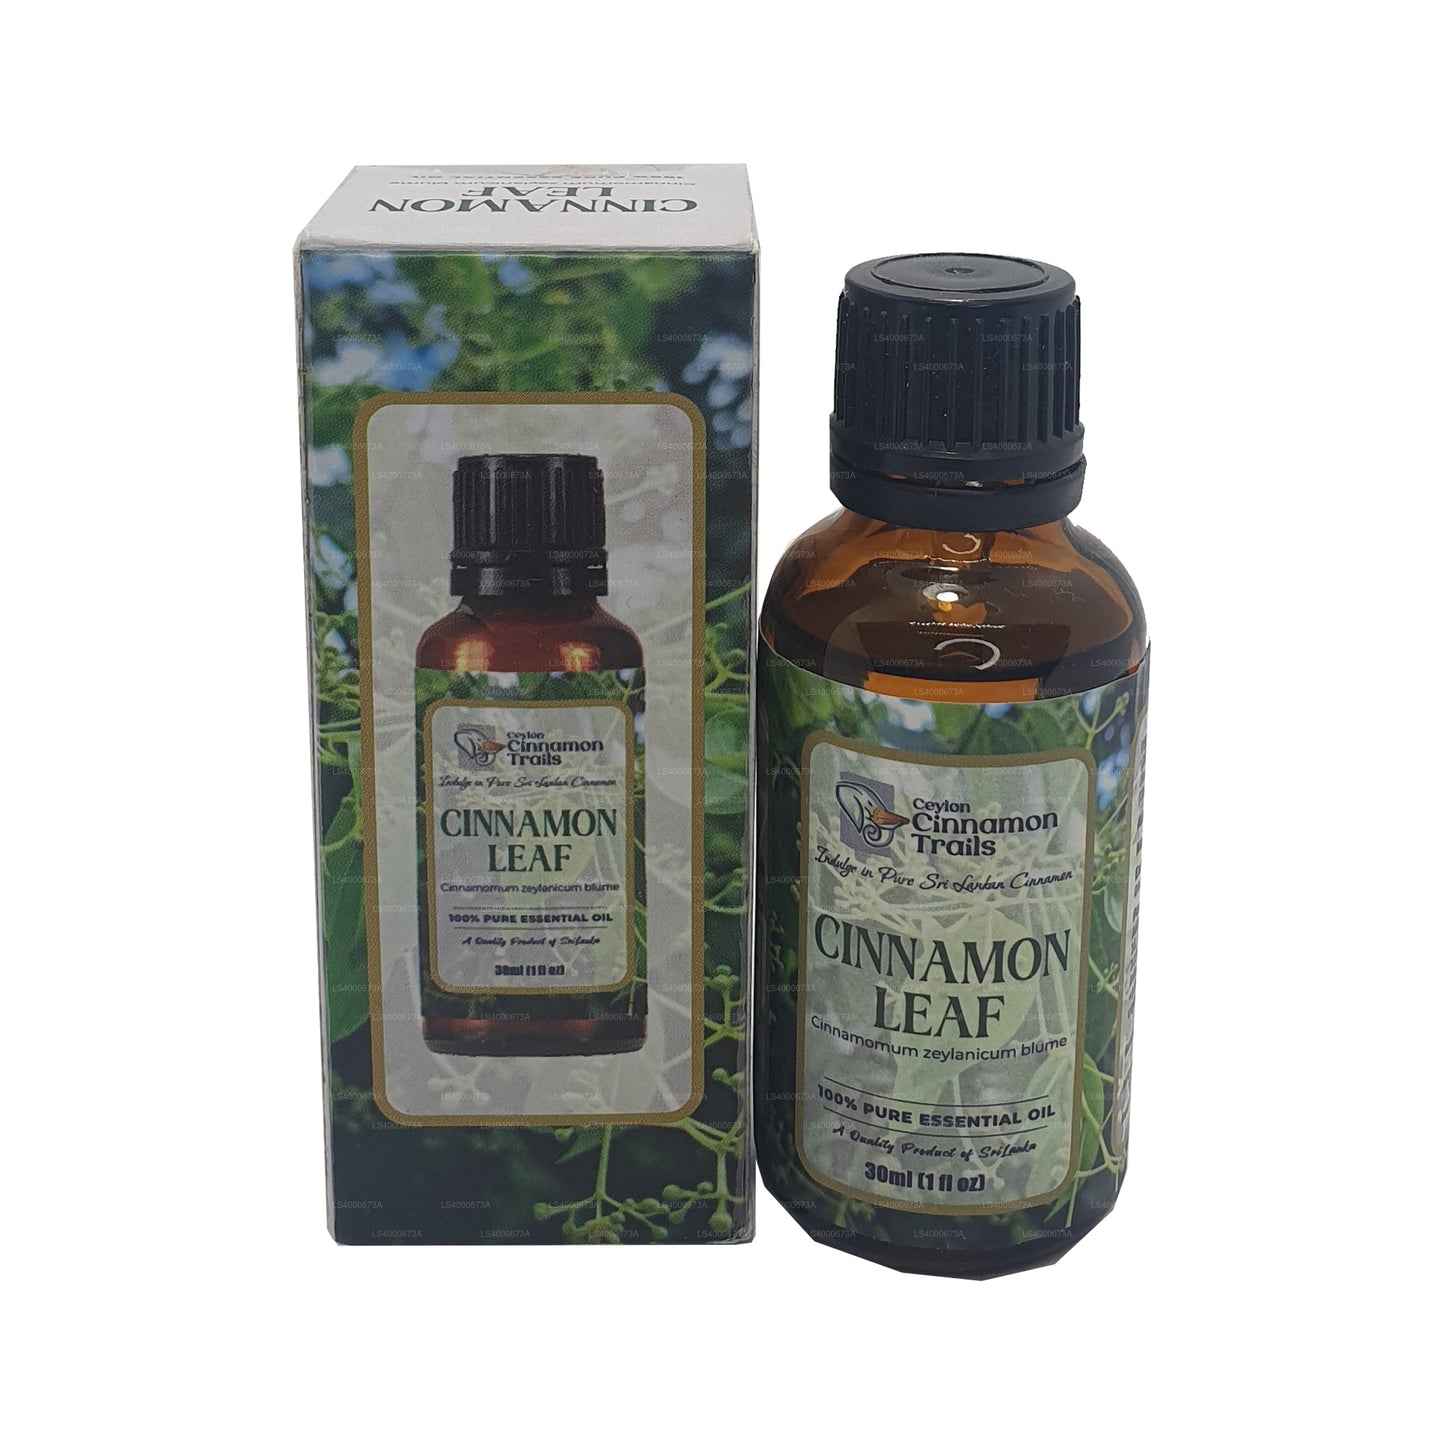 Ceylon Cinnamon Trails Cinnamon Leaf Essentials Oil